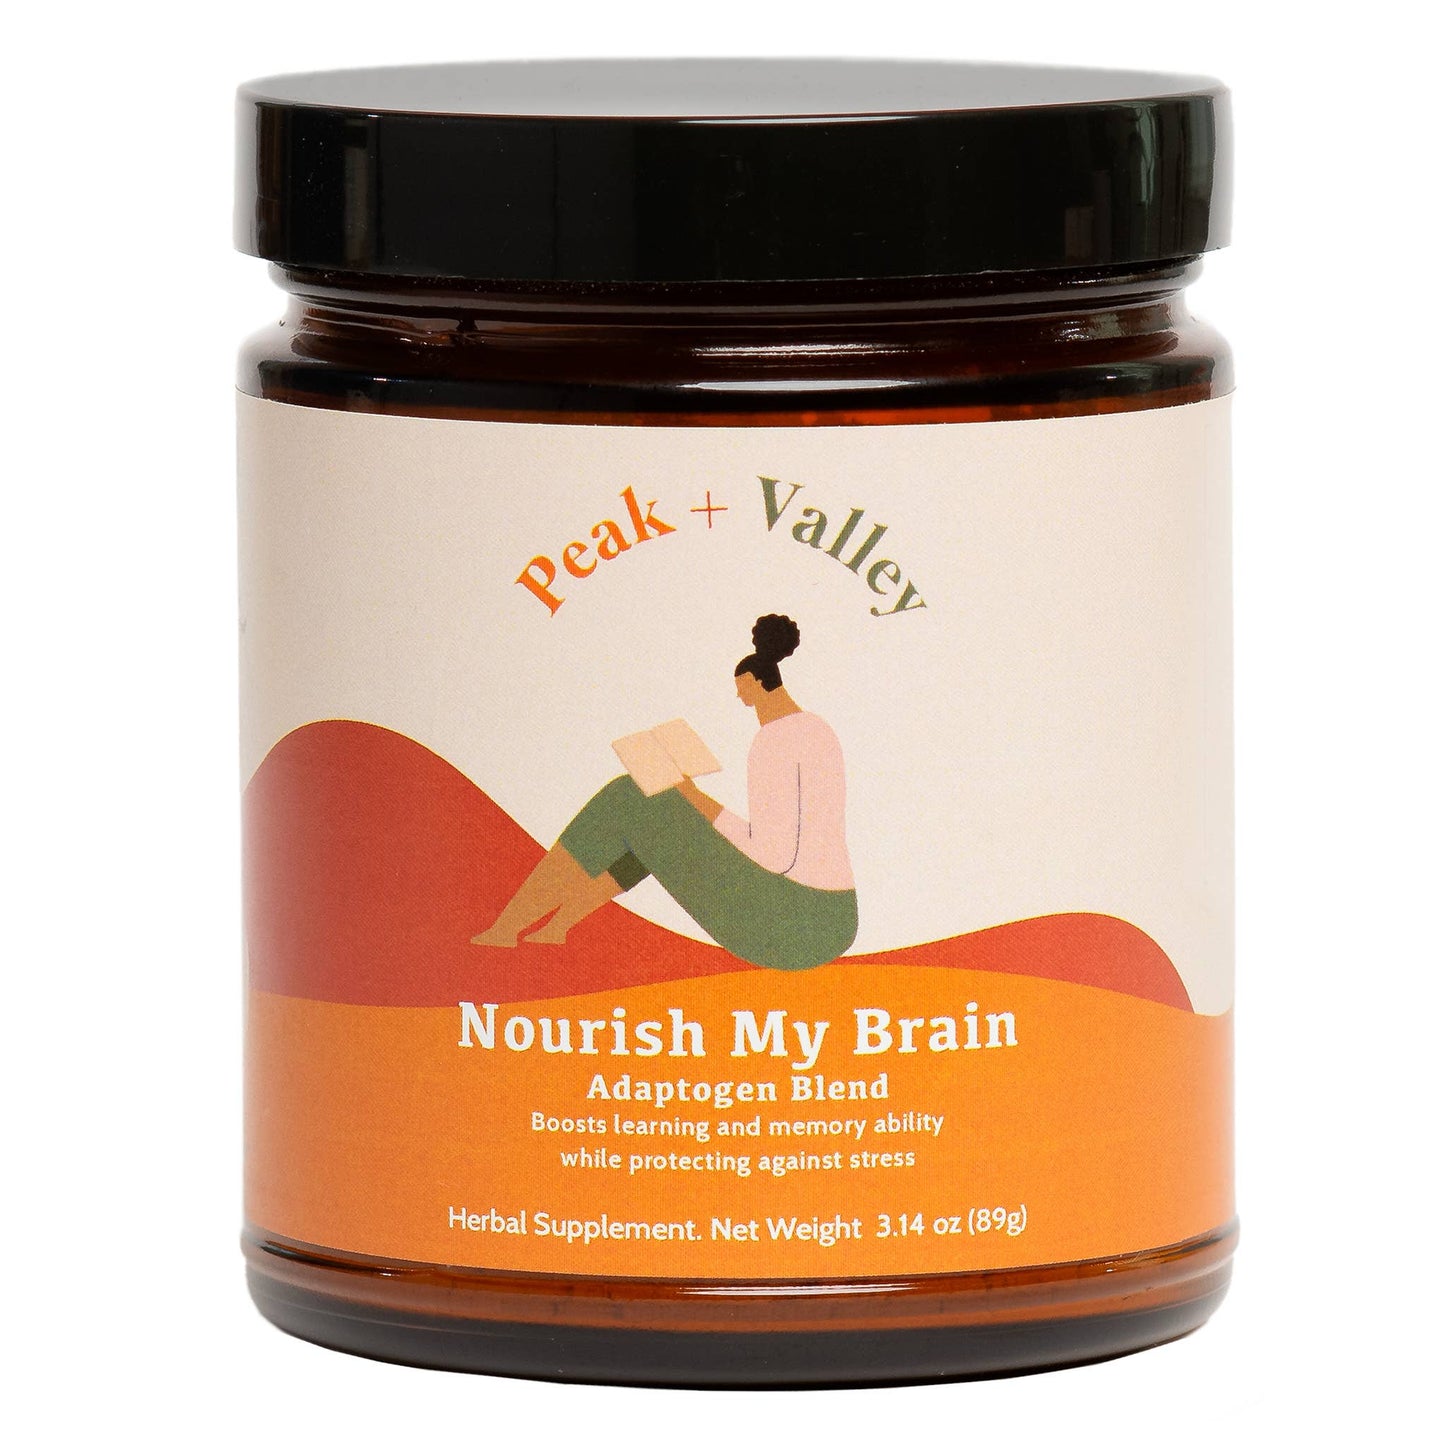 Nourish My Brain Adaptogen Blend Supplement by Peak and Valley